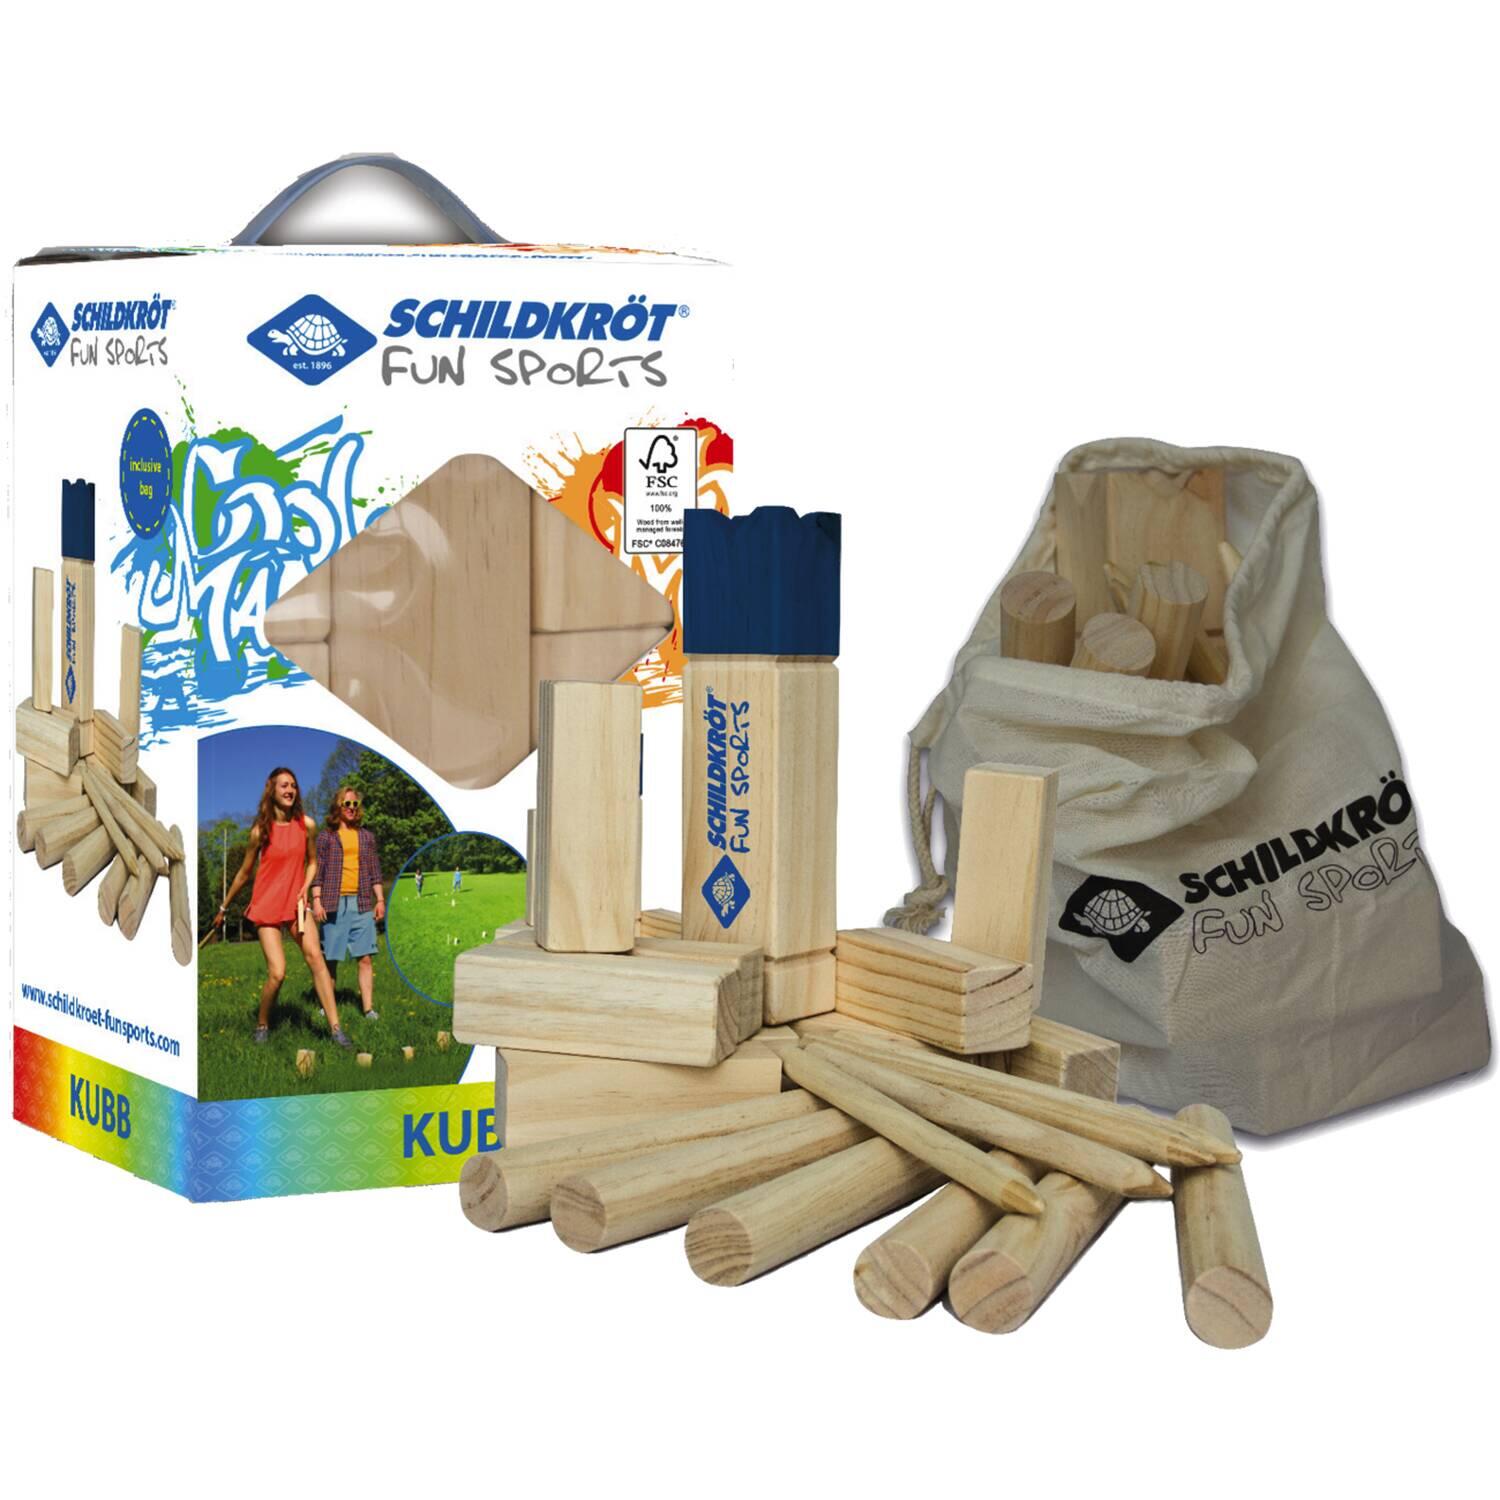 Schildkröt Funsports Unisex - Erwachsene Schwedenschach FSC Eco Holz Kubb XL mit Tasche, Farbe, 1size